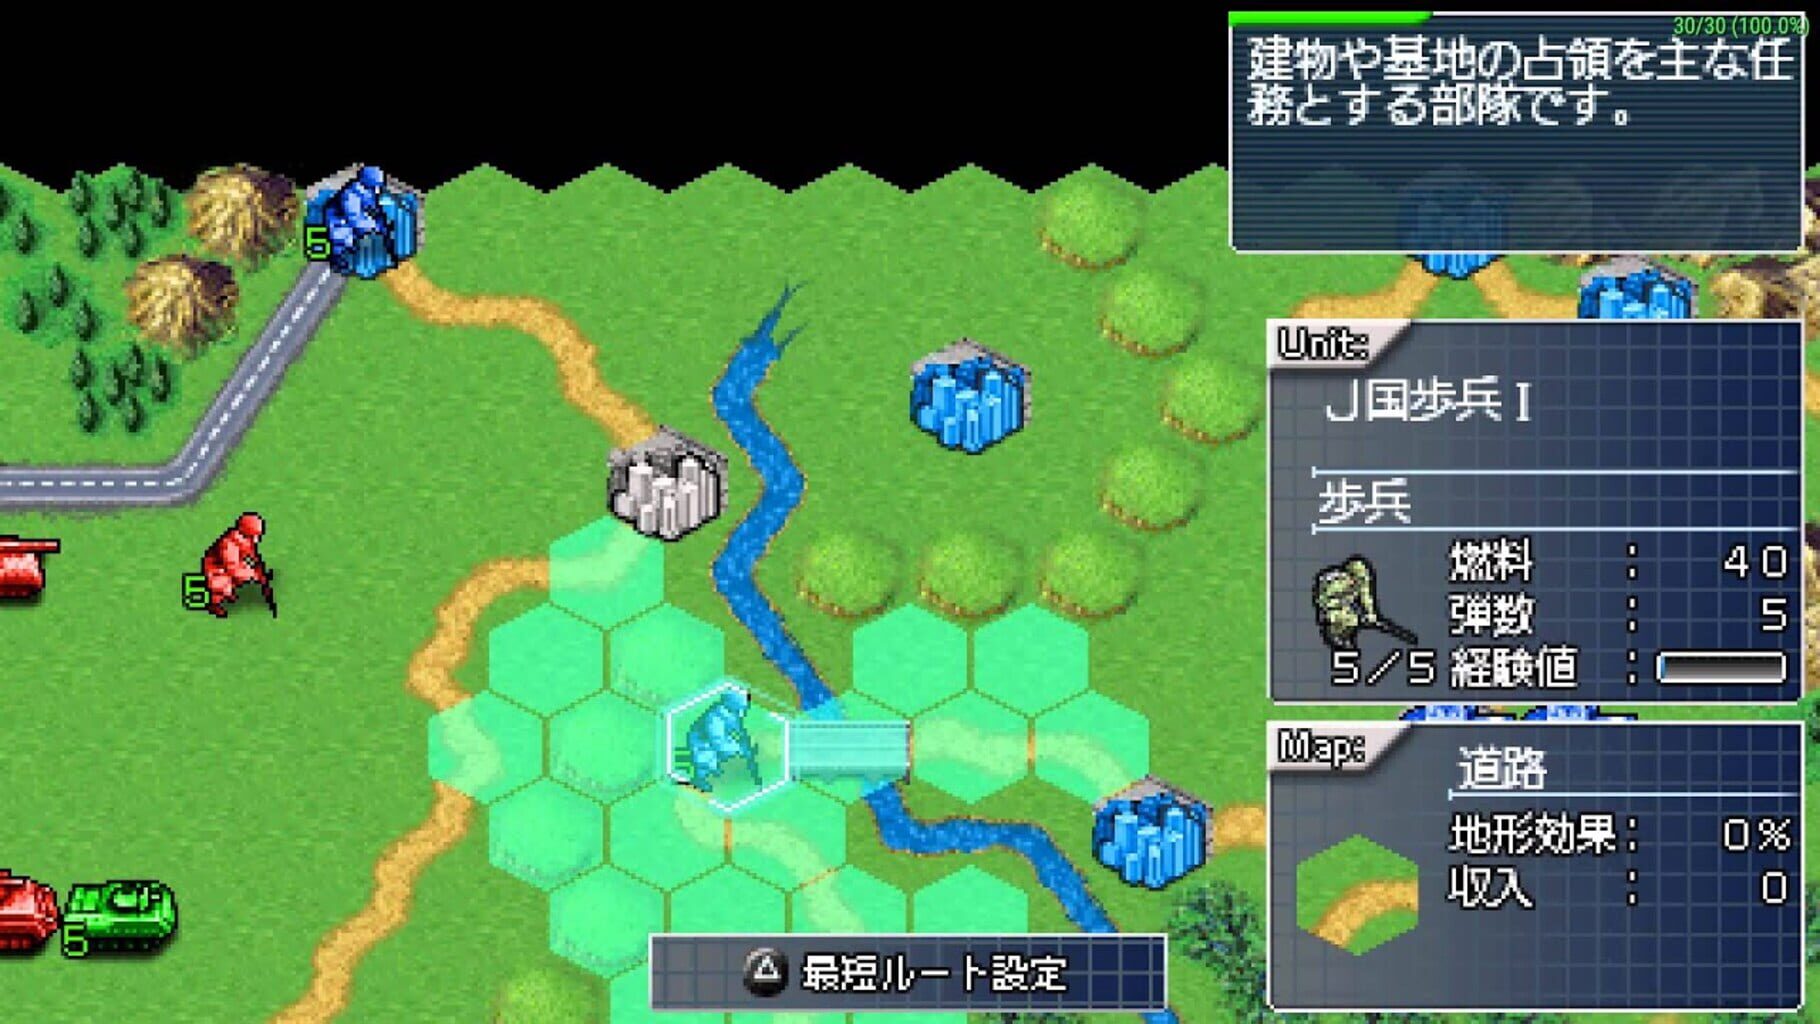 Captura de pantalla - Daisenryaku Portable